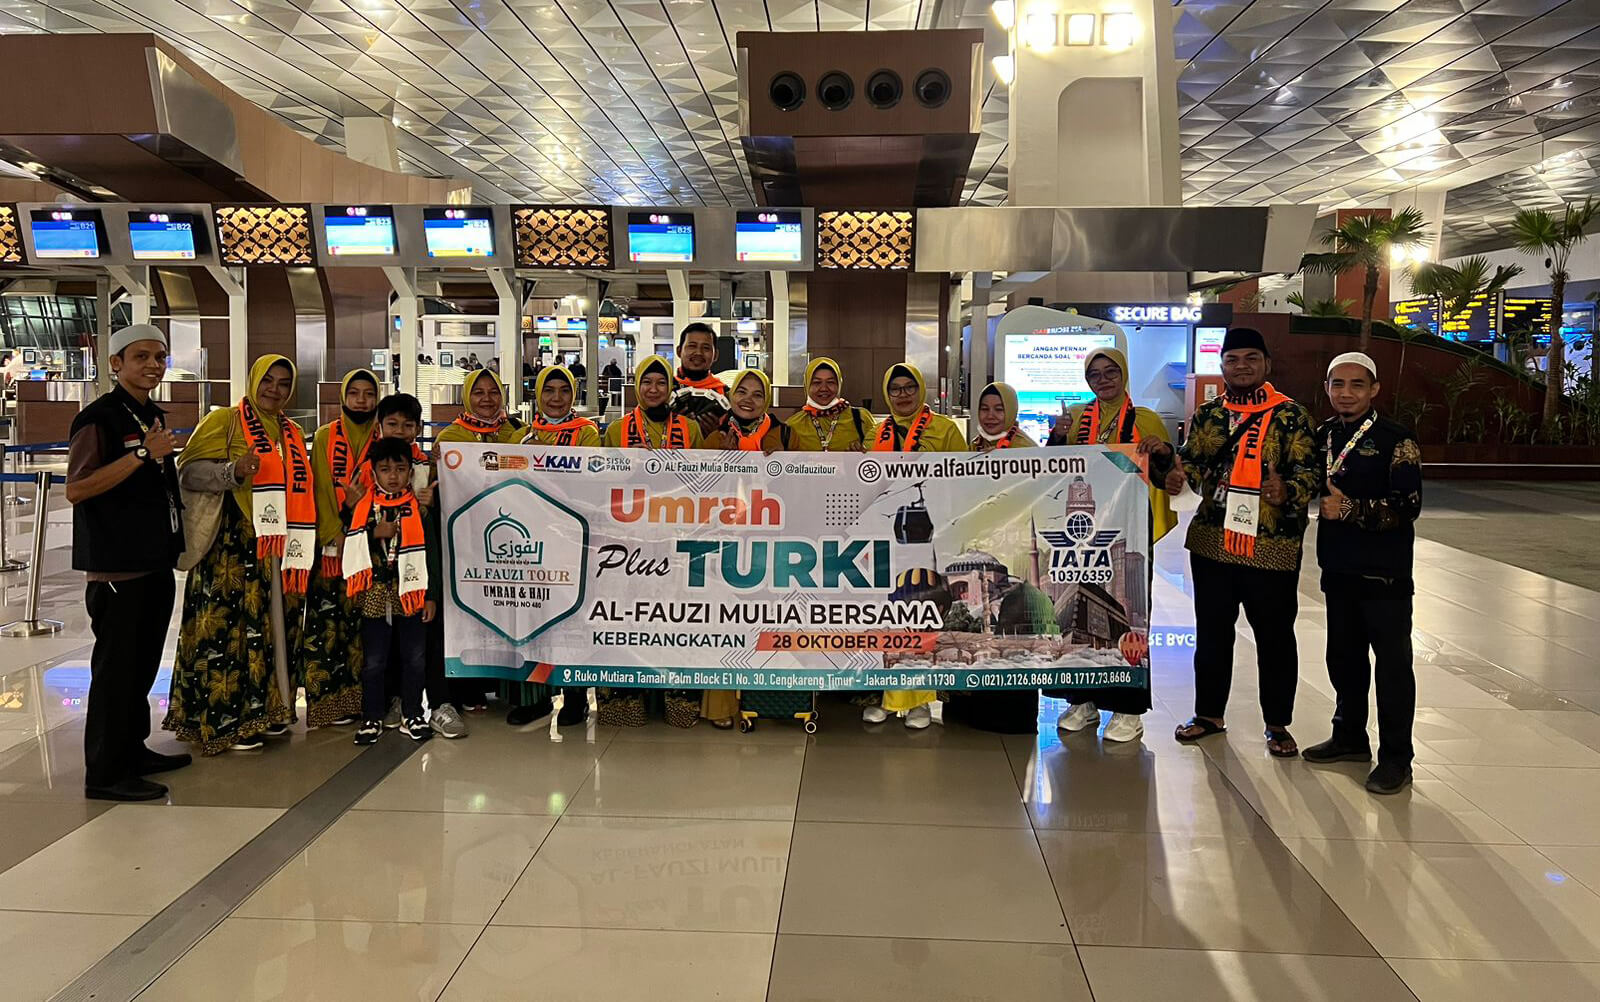 Al Fauzi Tour Umrah Plus Turki